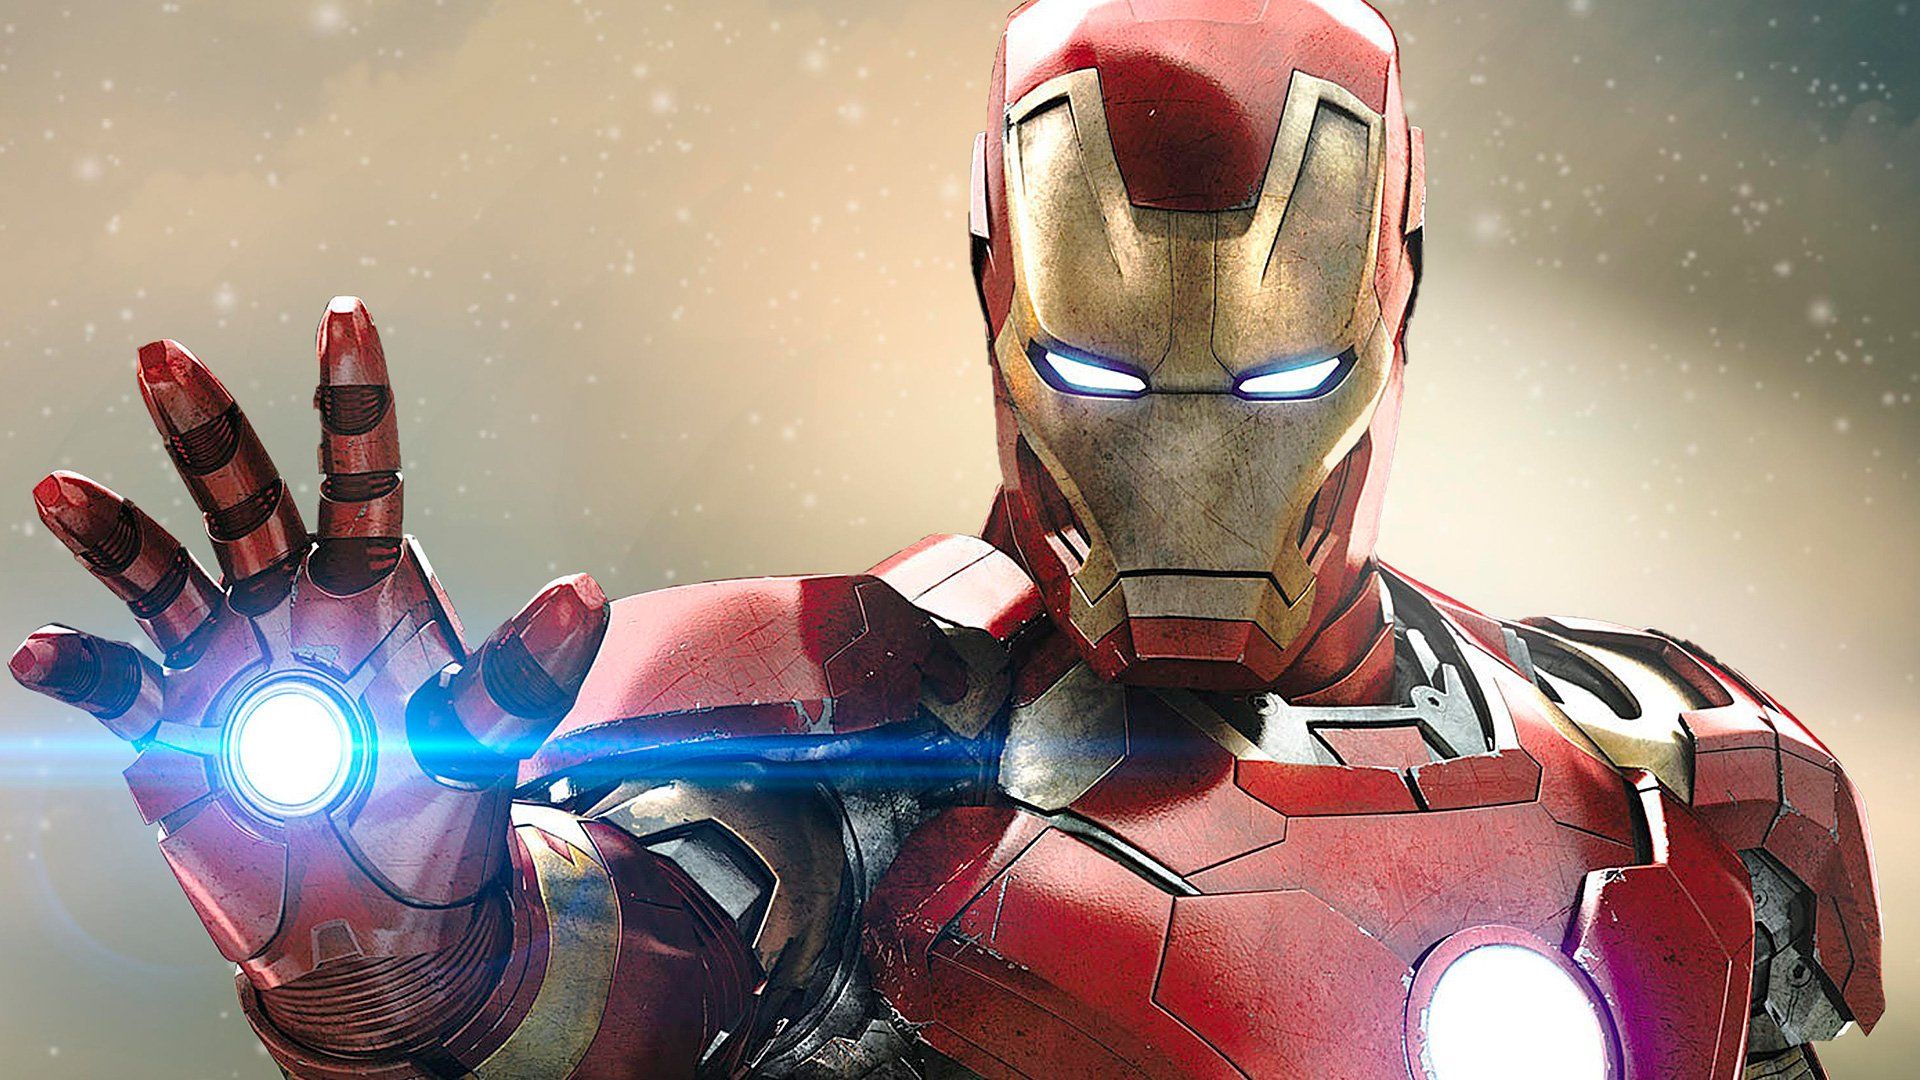 Iron Man Wallpaper Engine : Iron Man 1080p Wallpaper Engine | Download